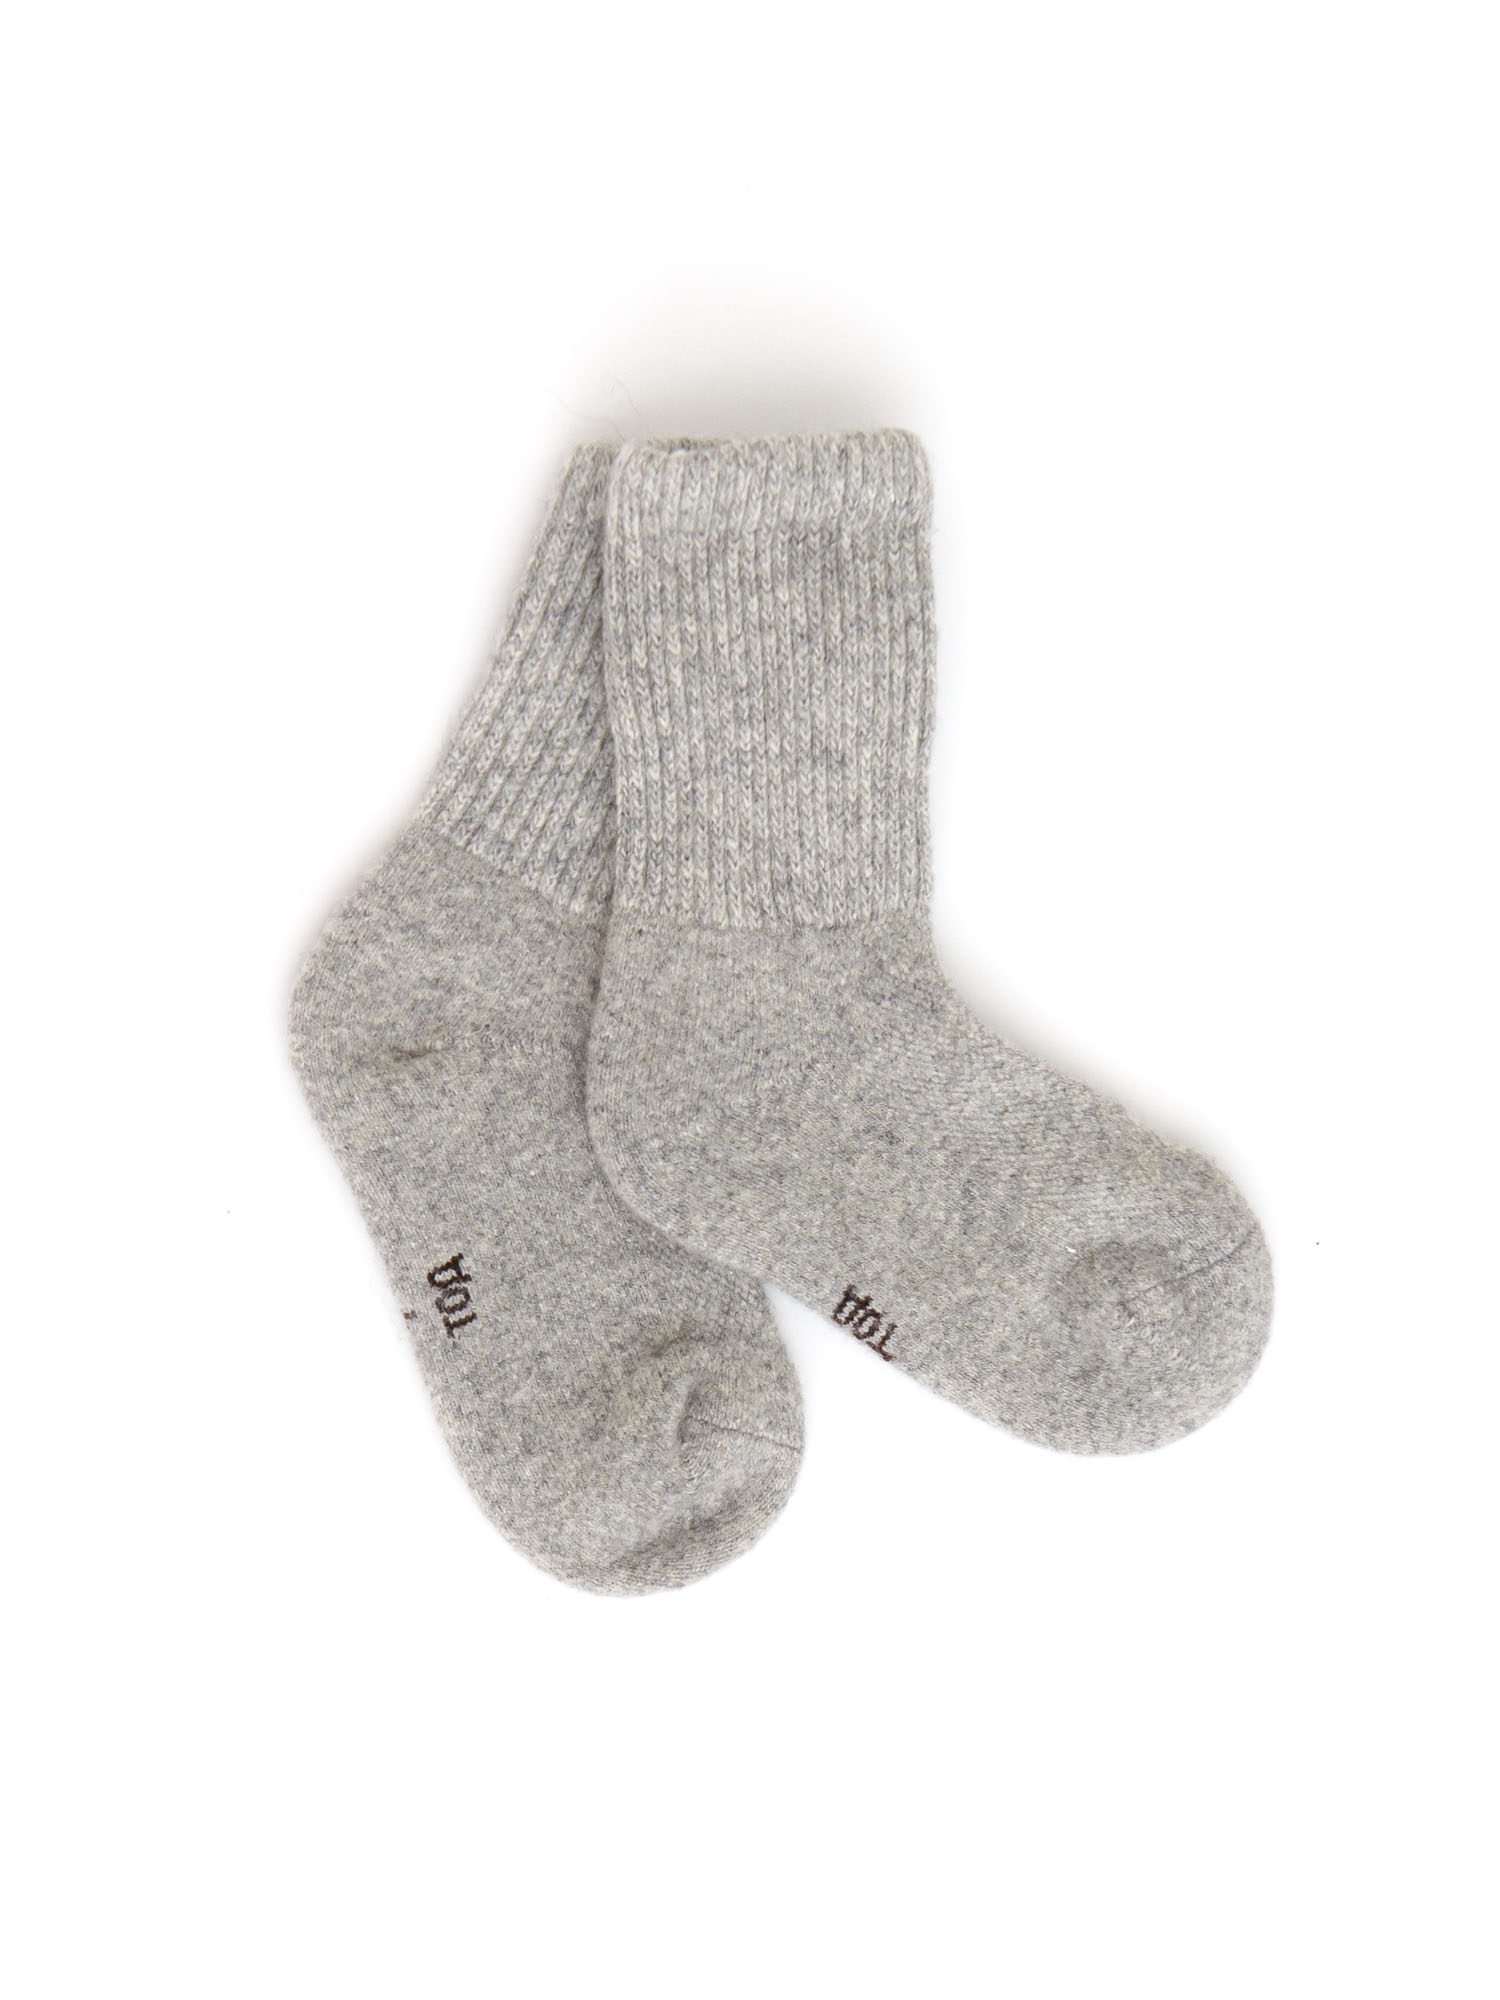 Детские носки из монгольской шерсти 5с ТОД ОЙМС ХХК, цвет серый, размер 5 (18-20 см)